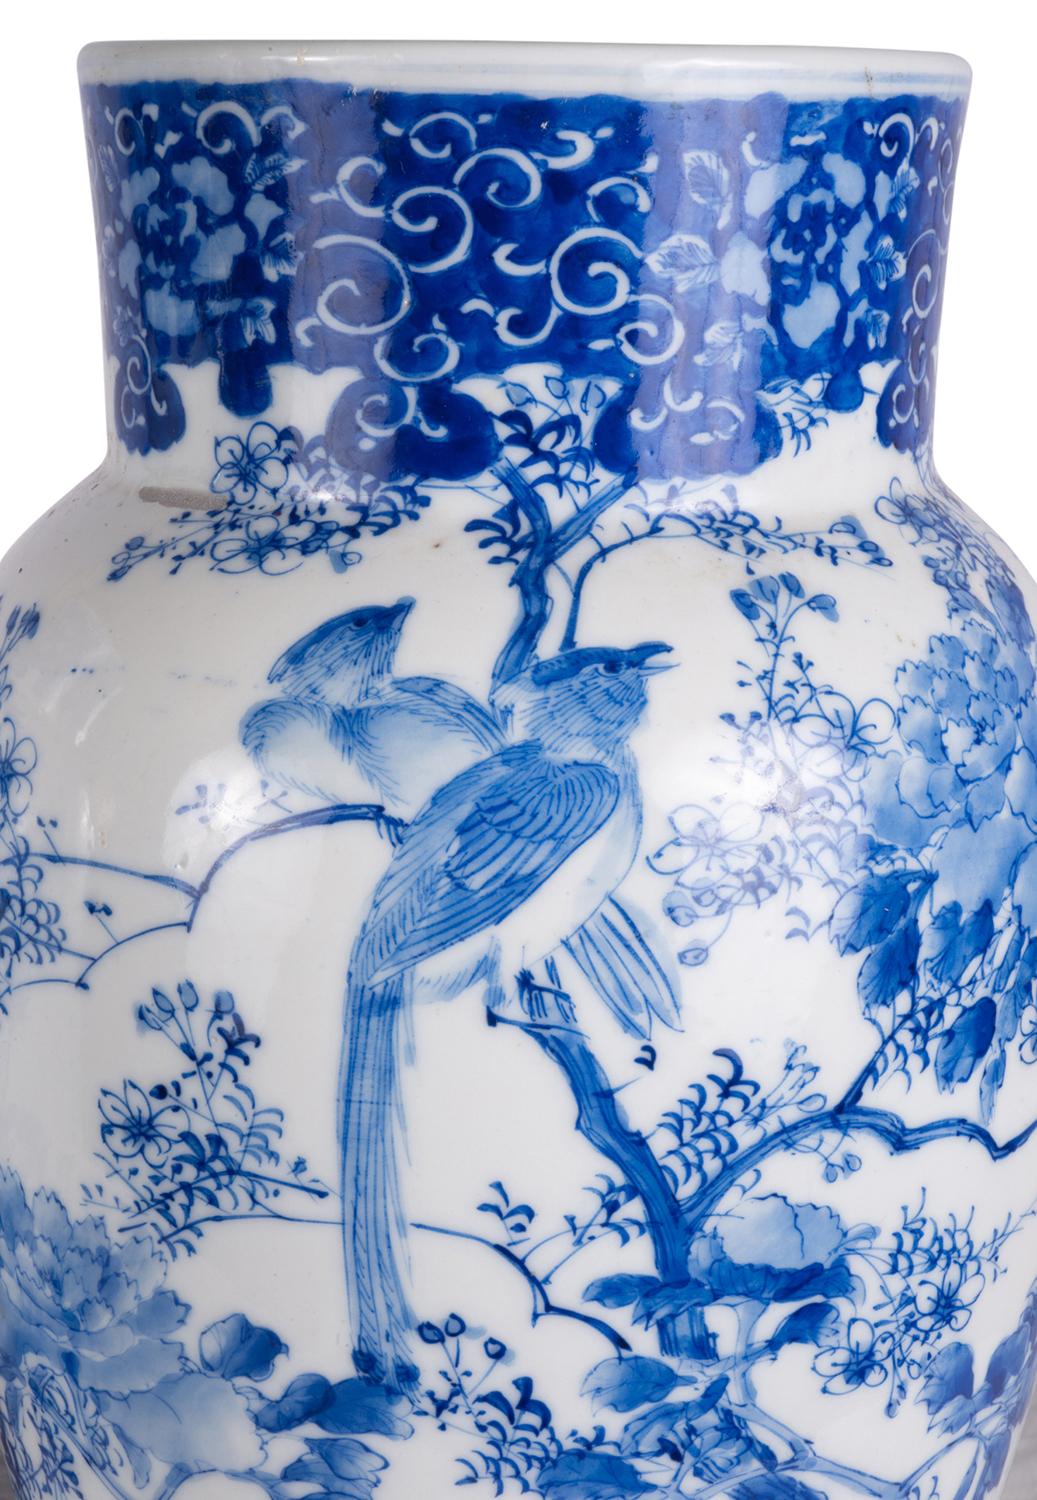 japanese vases blue and white